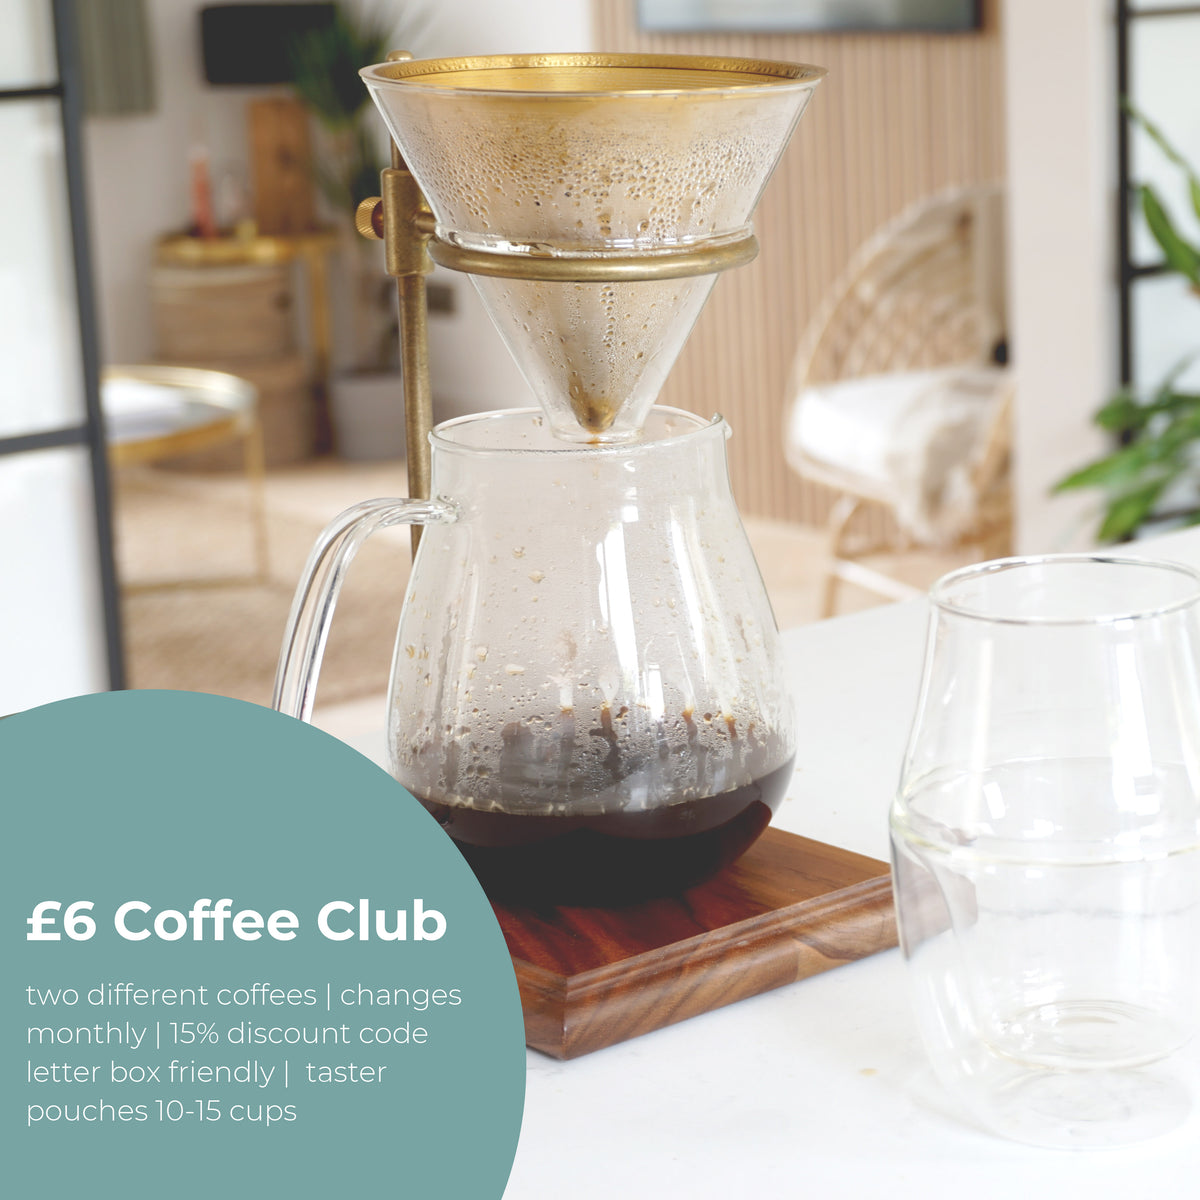 £6 Coffee Club